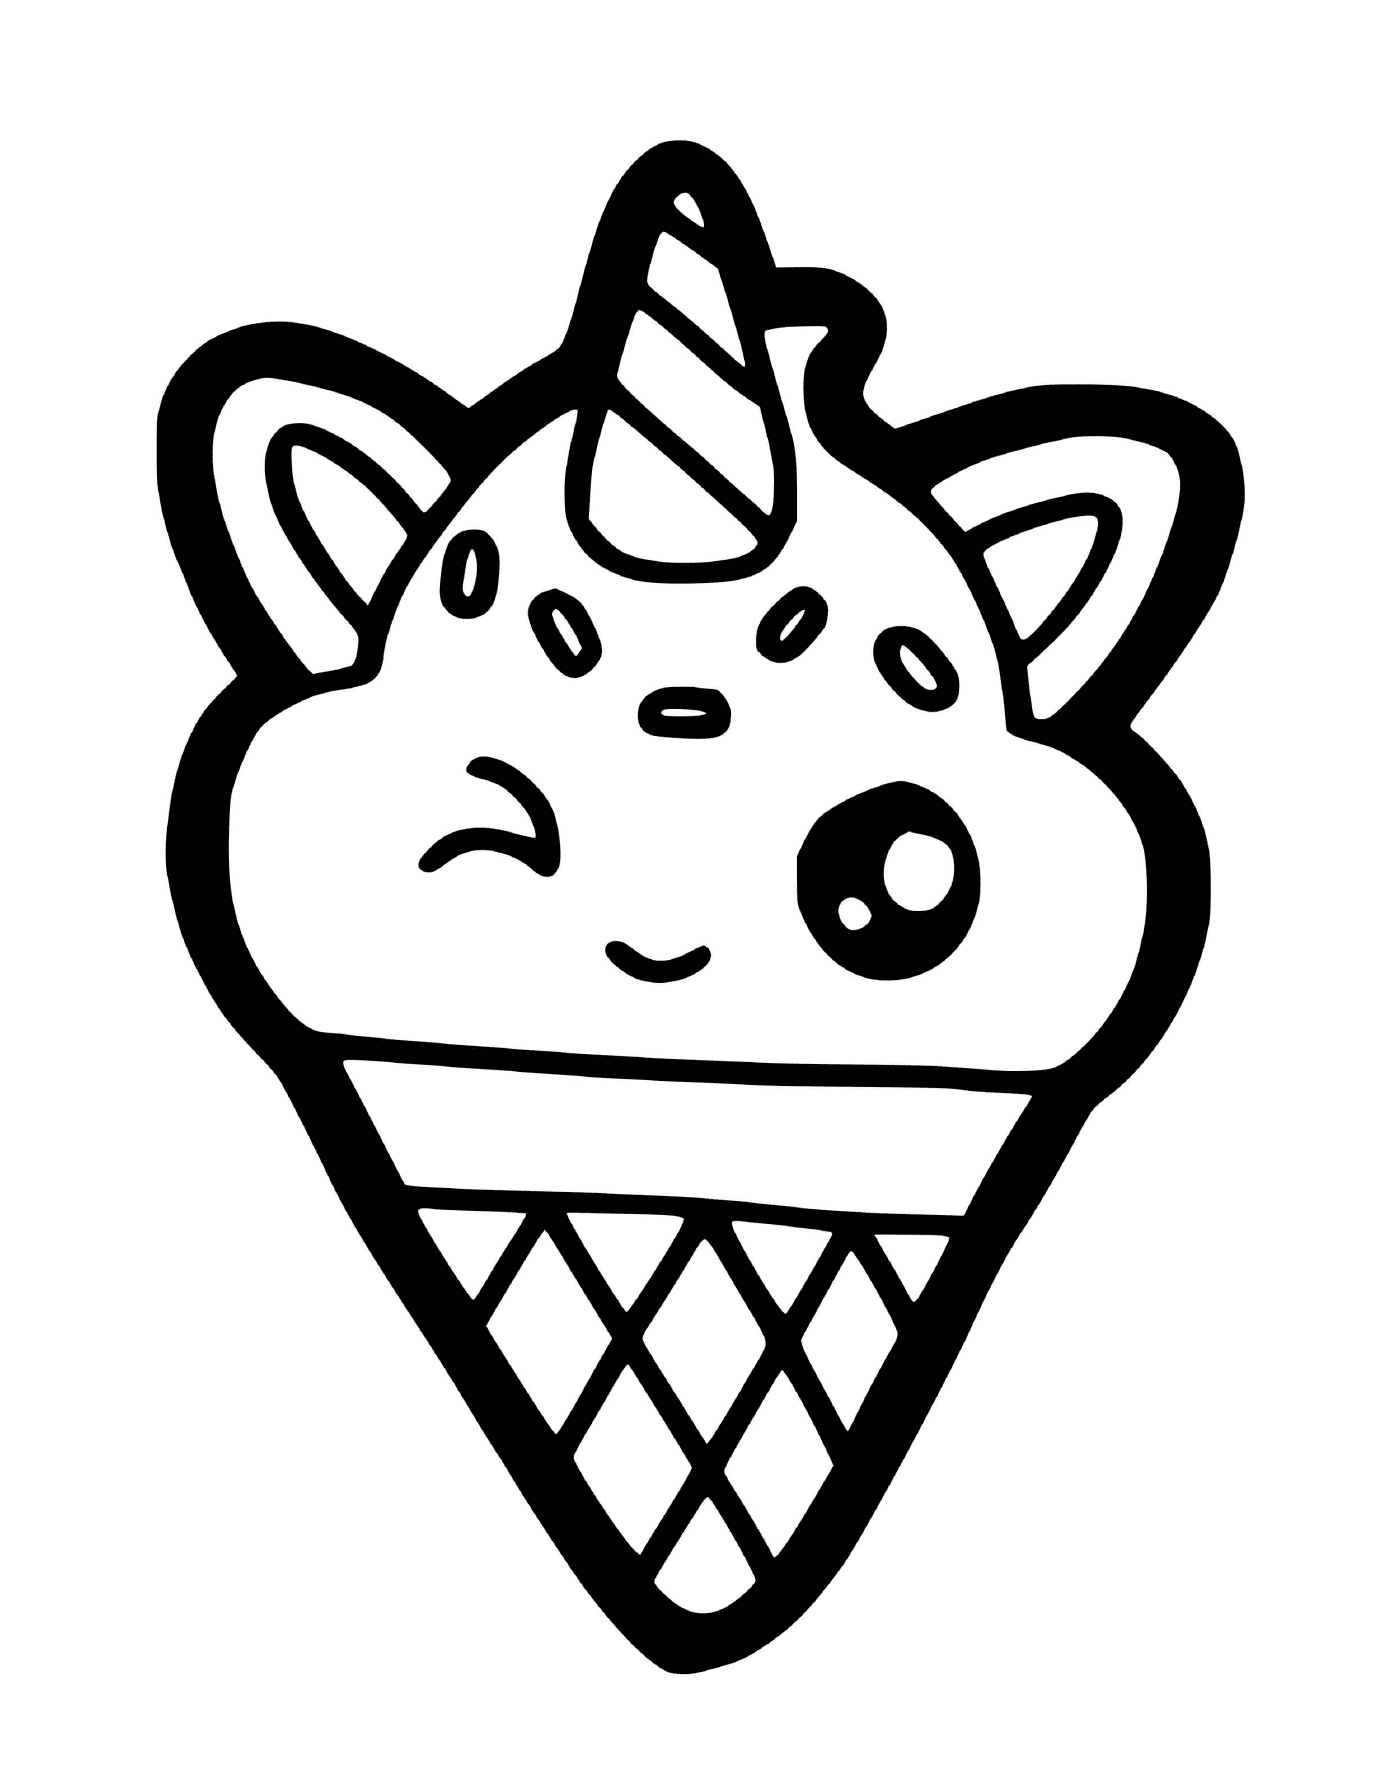  चिवाई जाति के जंगली जानवर के आकार में स्वादिष्ट आइसक्रीम 